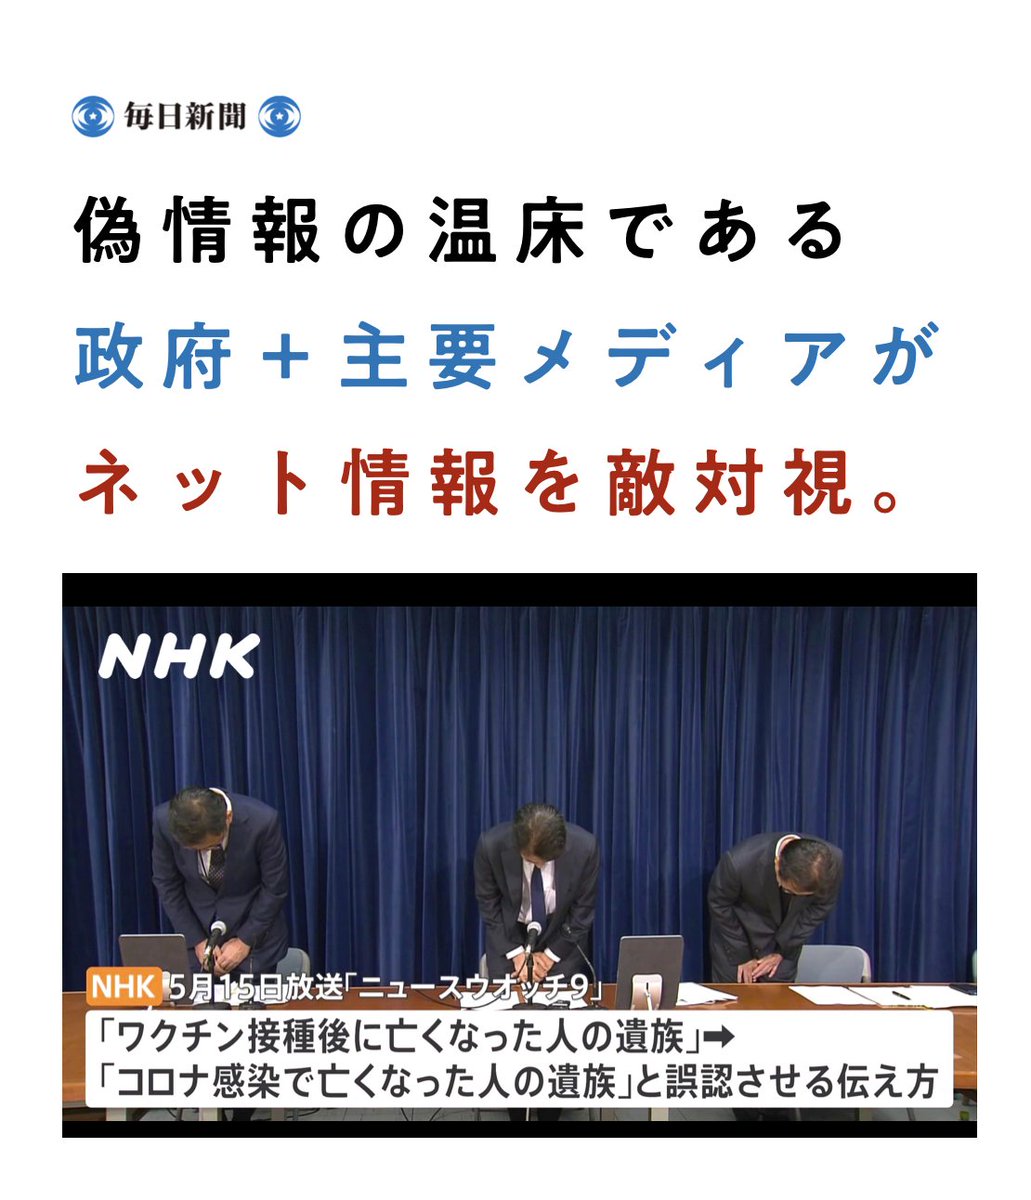 政府もテレビも 嘘が次々とはがされて 困ってるらしいよ😎 mainichi.jp/articles/20240…